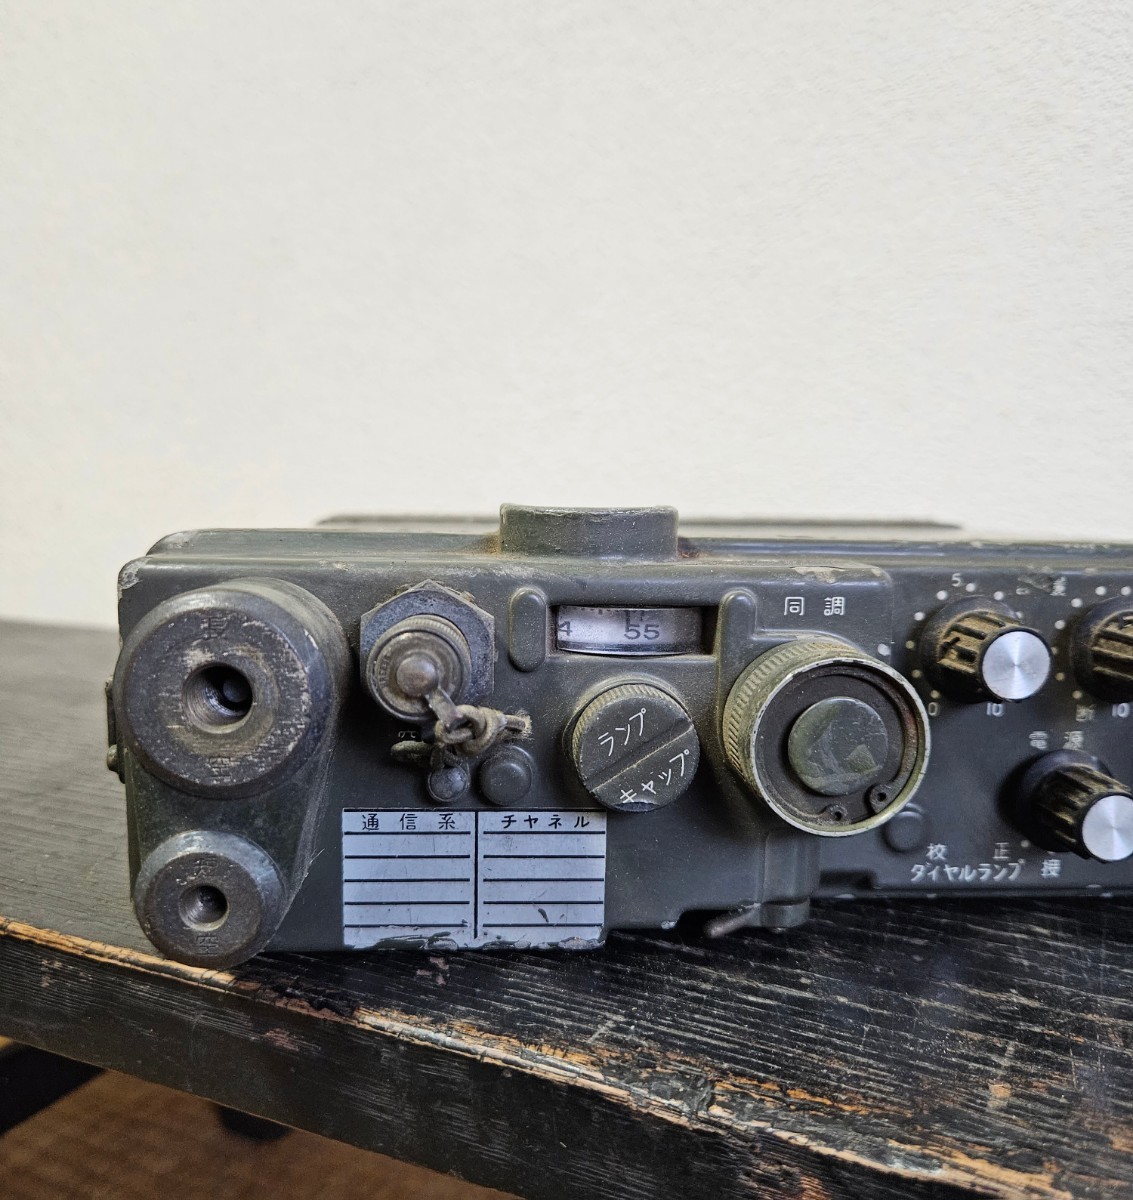  старый Япония армия рация приемопередатчик Vintage армия для retro подлинная вещь радиолюбительская связь милитари B